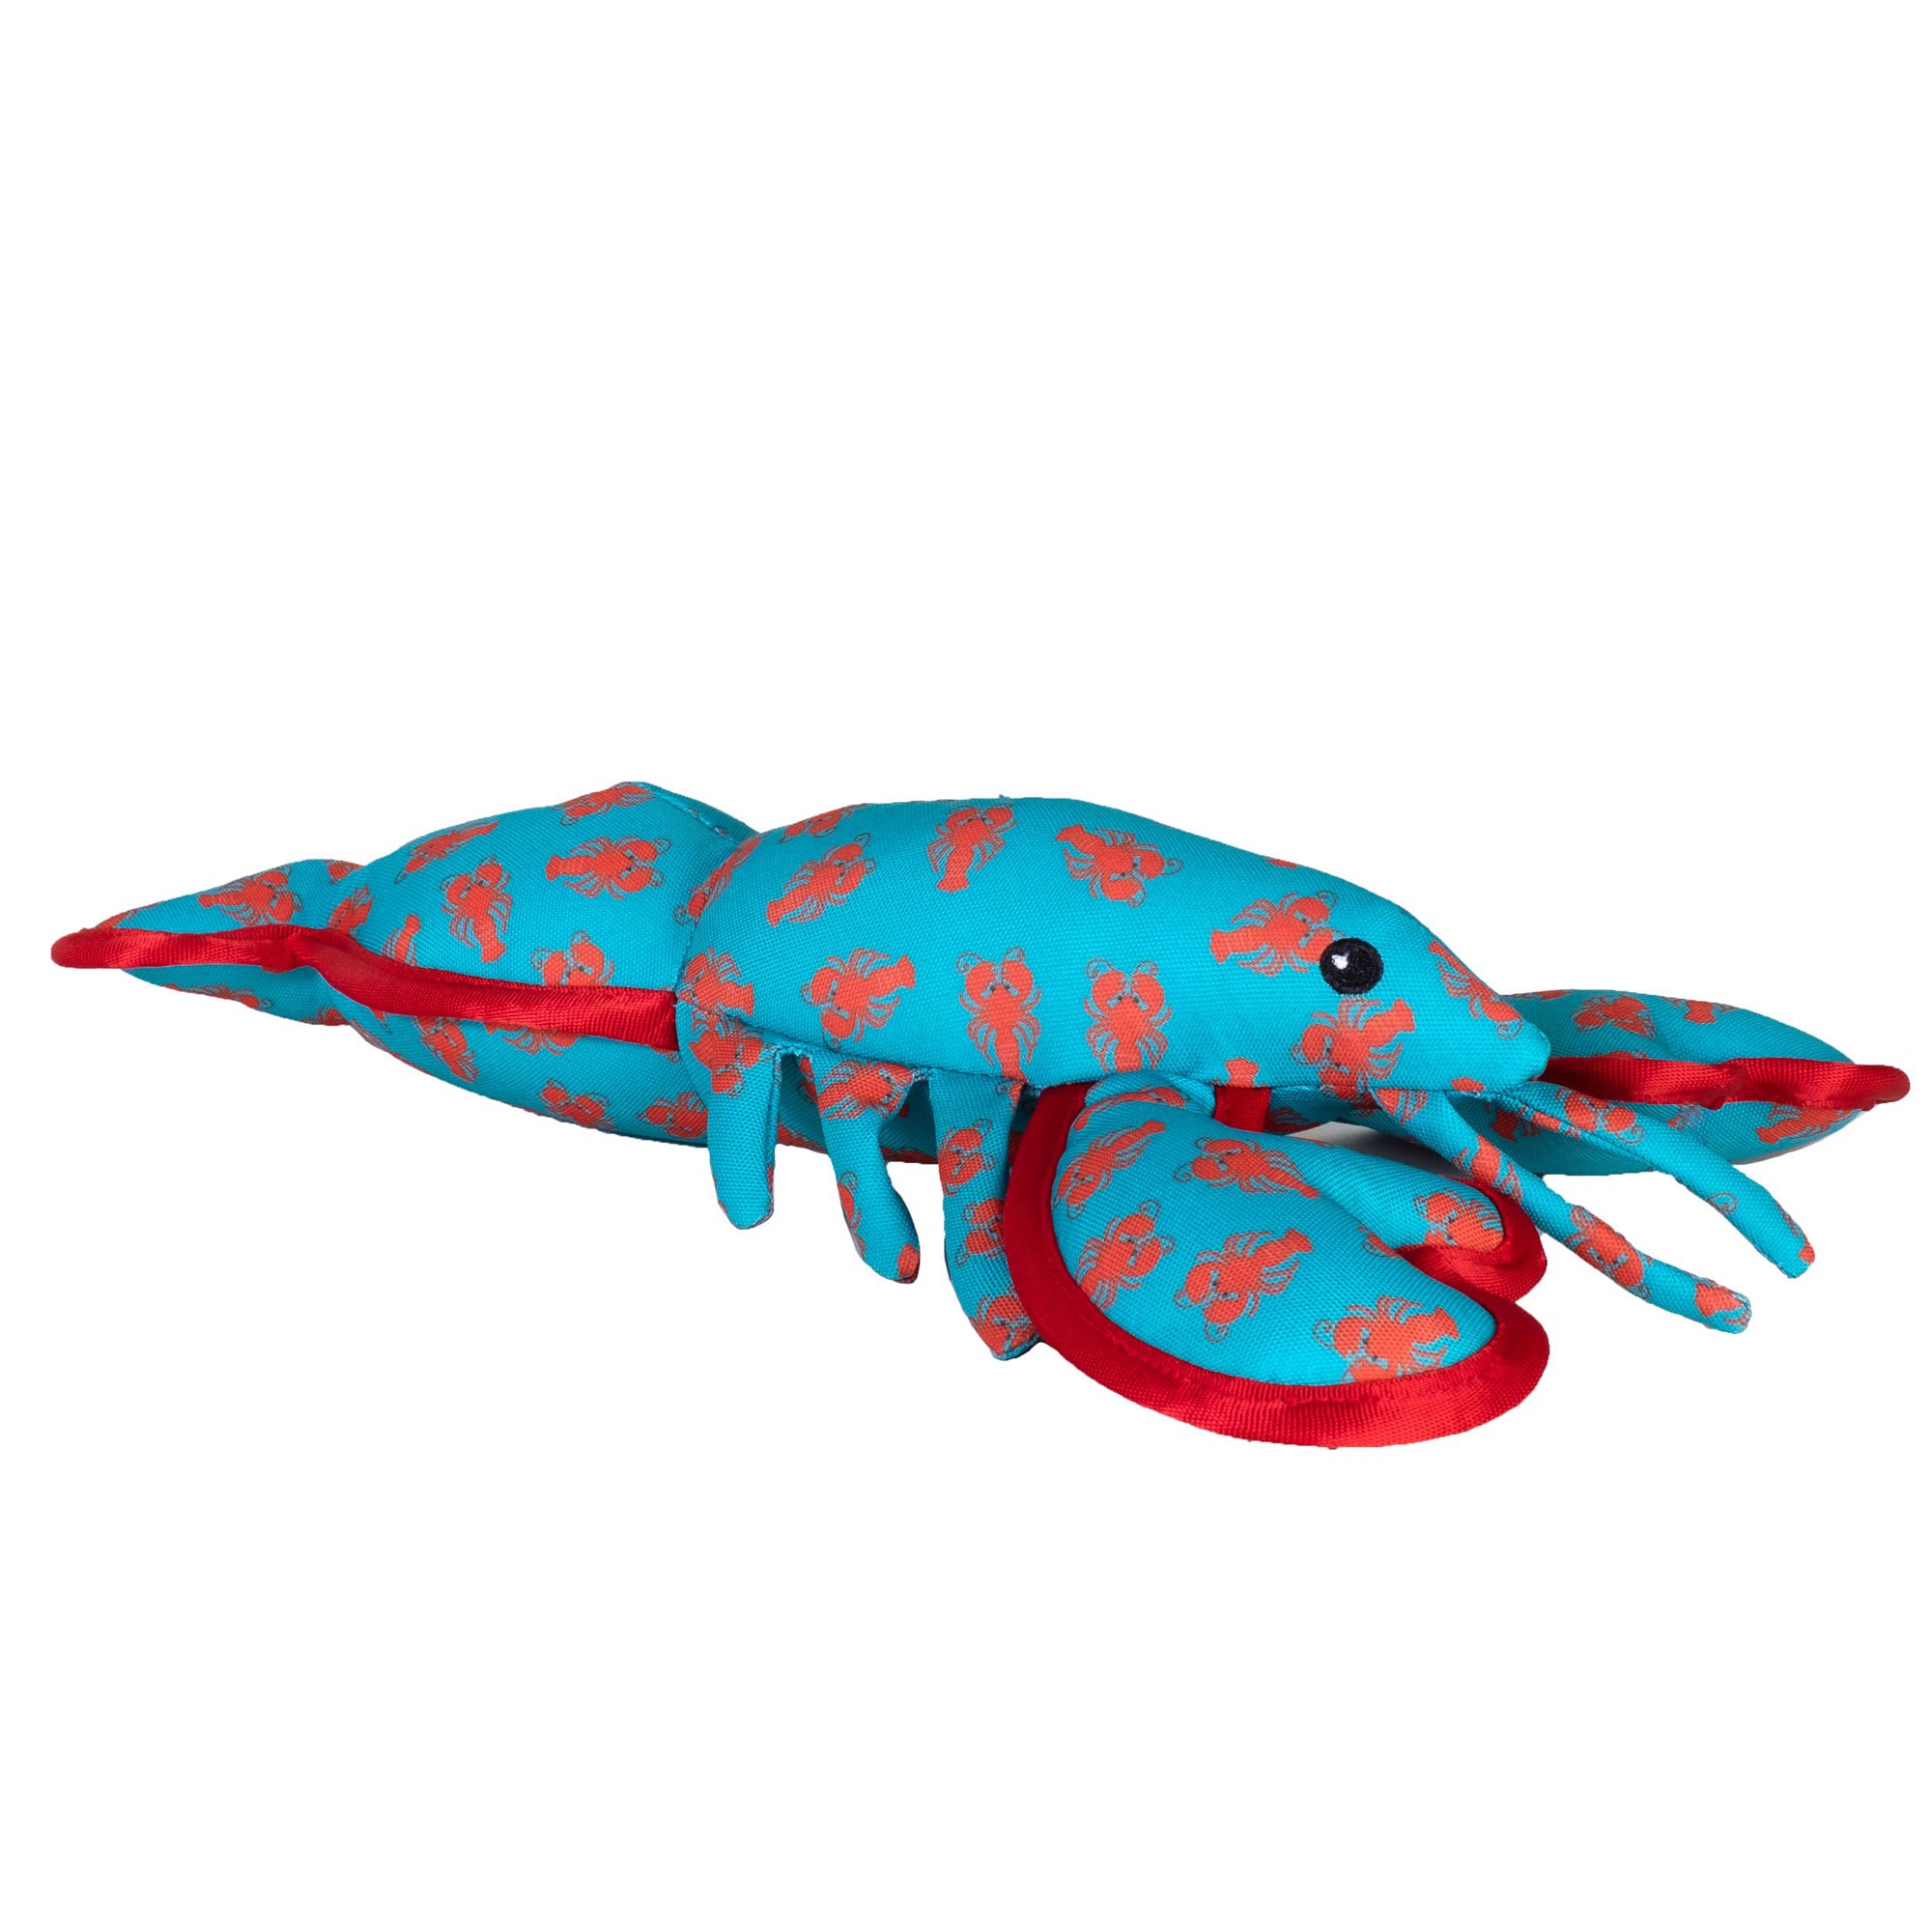 The Worthy Dog Lobster Dog Toy